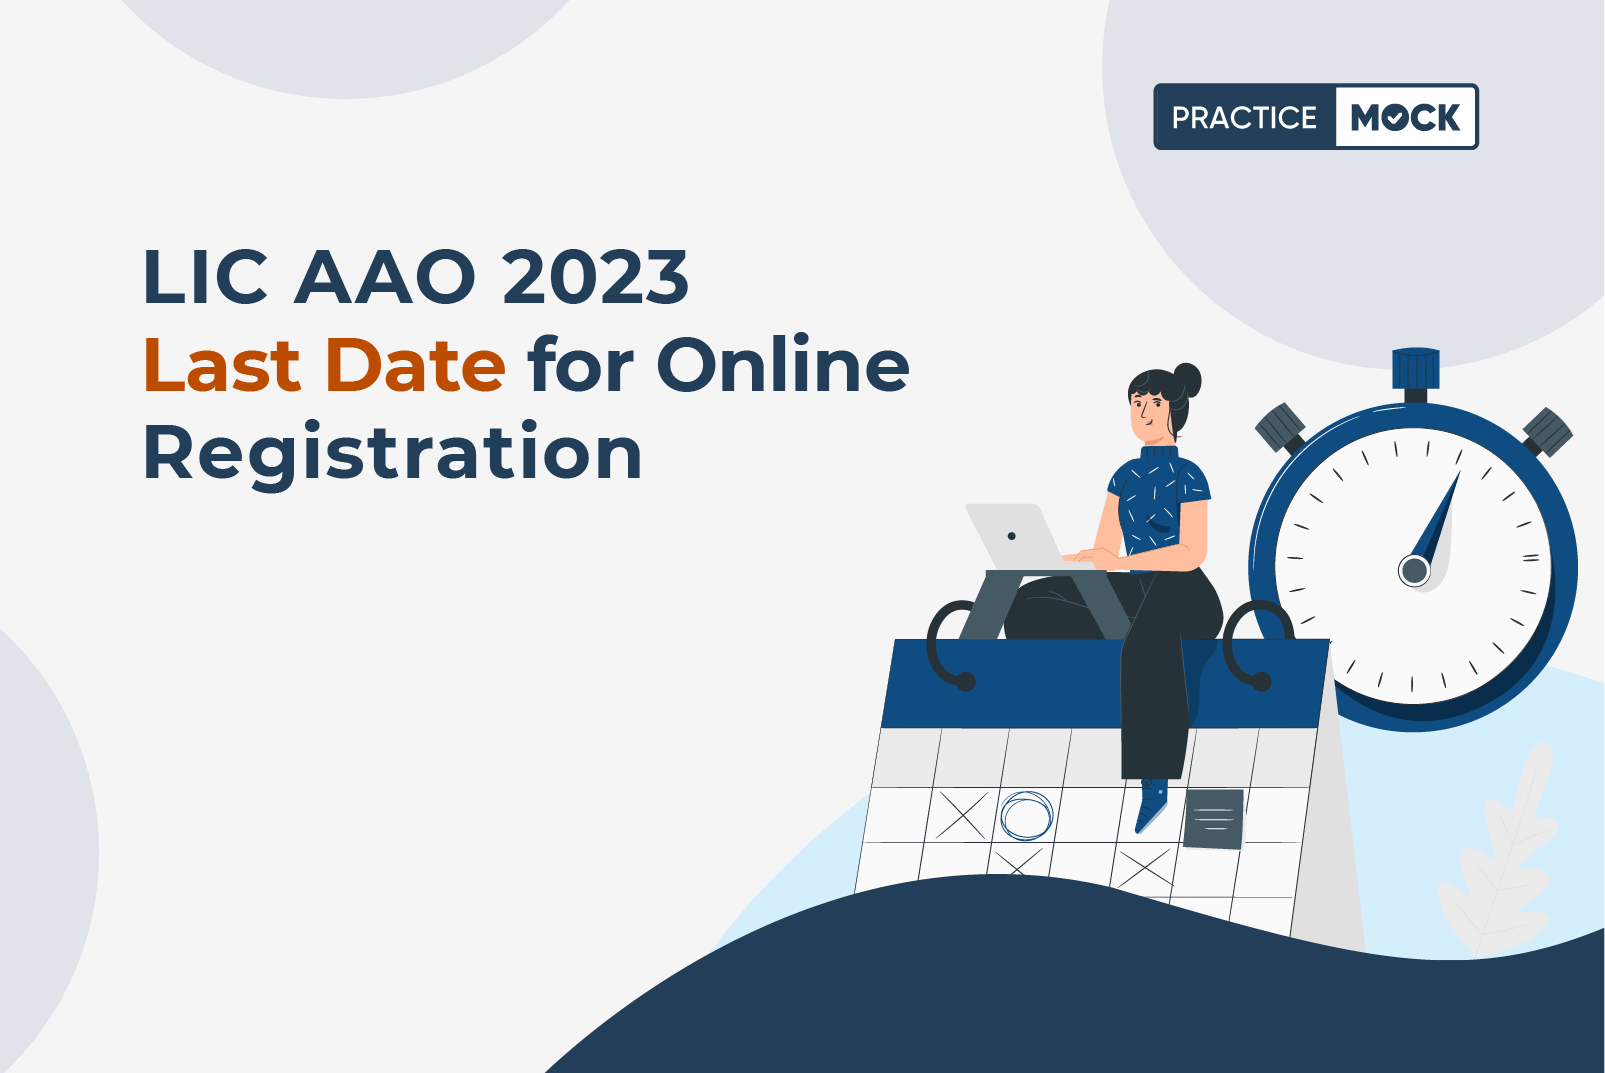 LIC AAO Online Registration